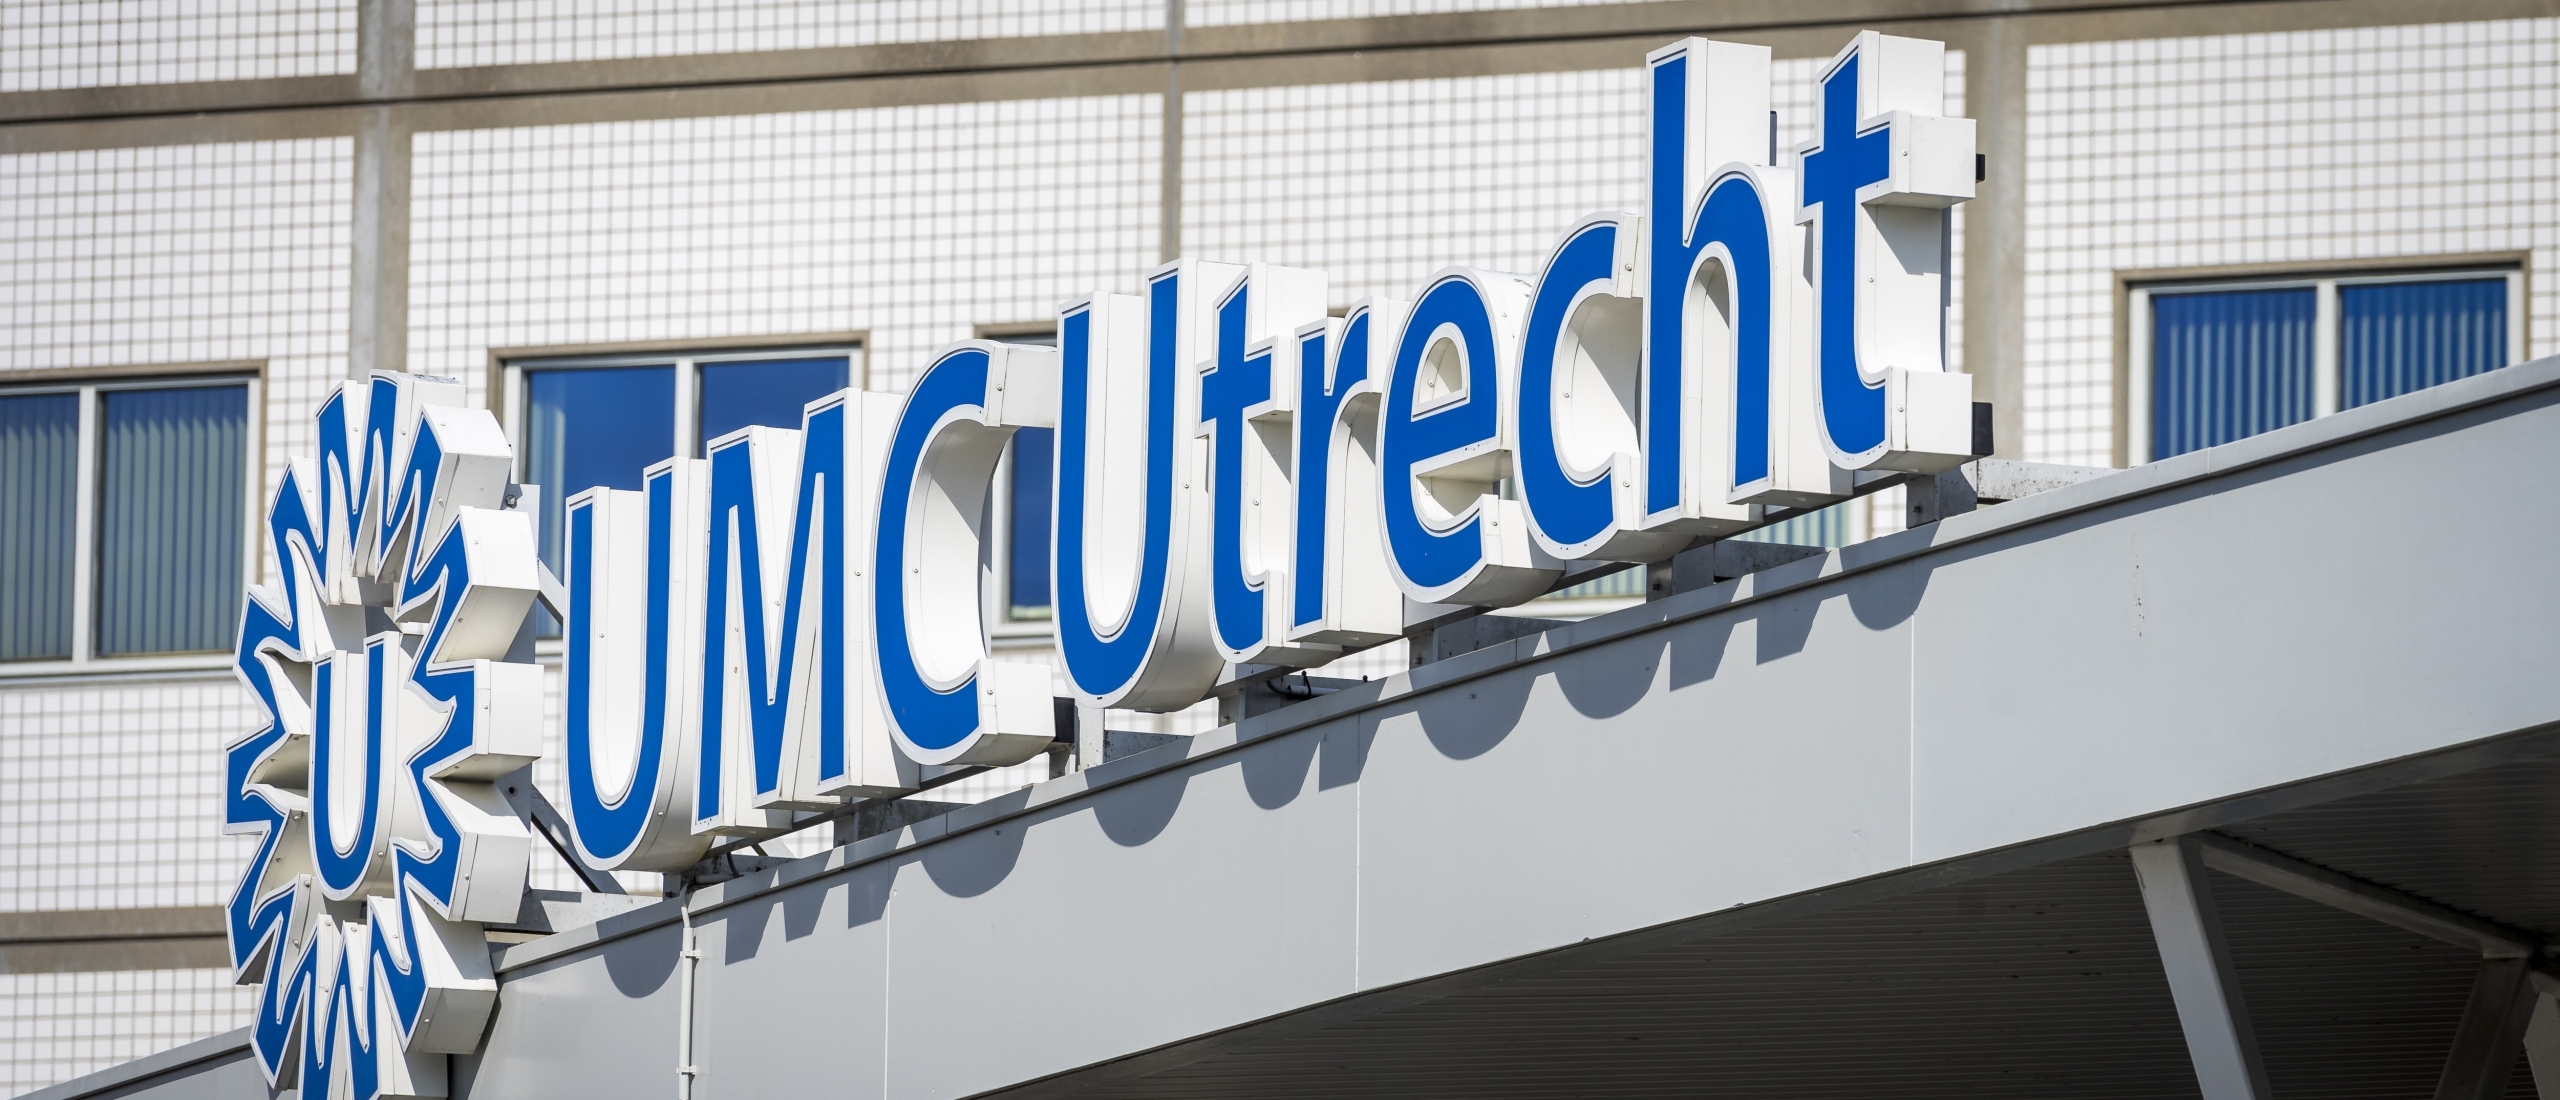 UMC Utrecht gaat nieuwe behandeling na beroerte uitgebreid testen